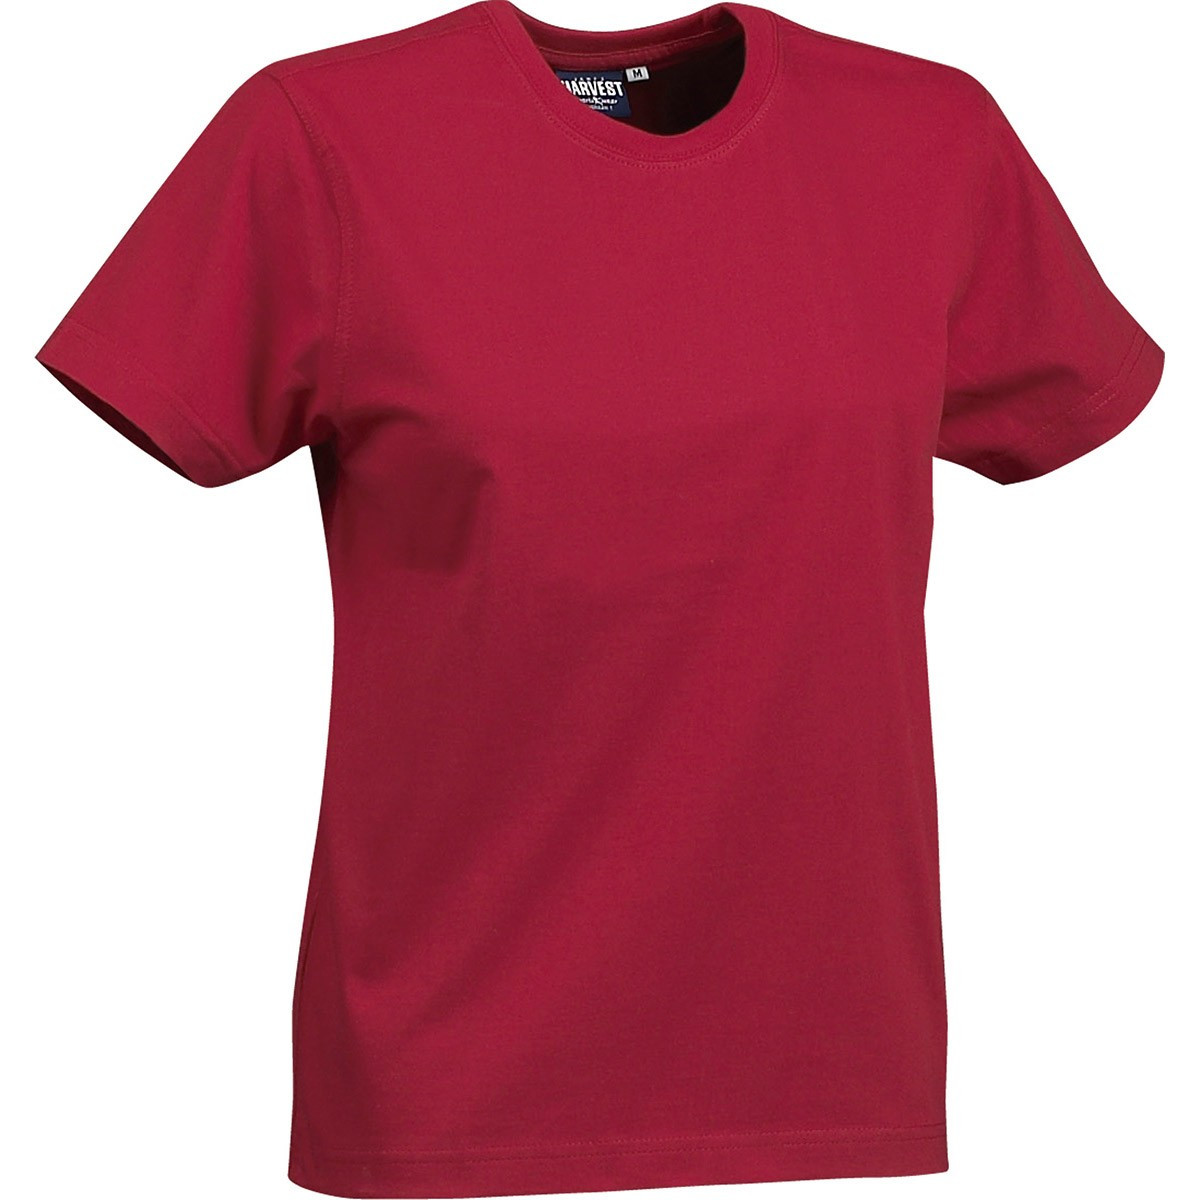 Купить женские футболки оптом. Футболка женская. Футболка красная. Красная футболка женская.